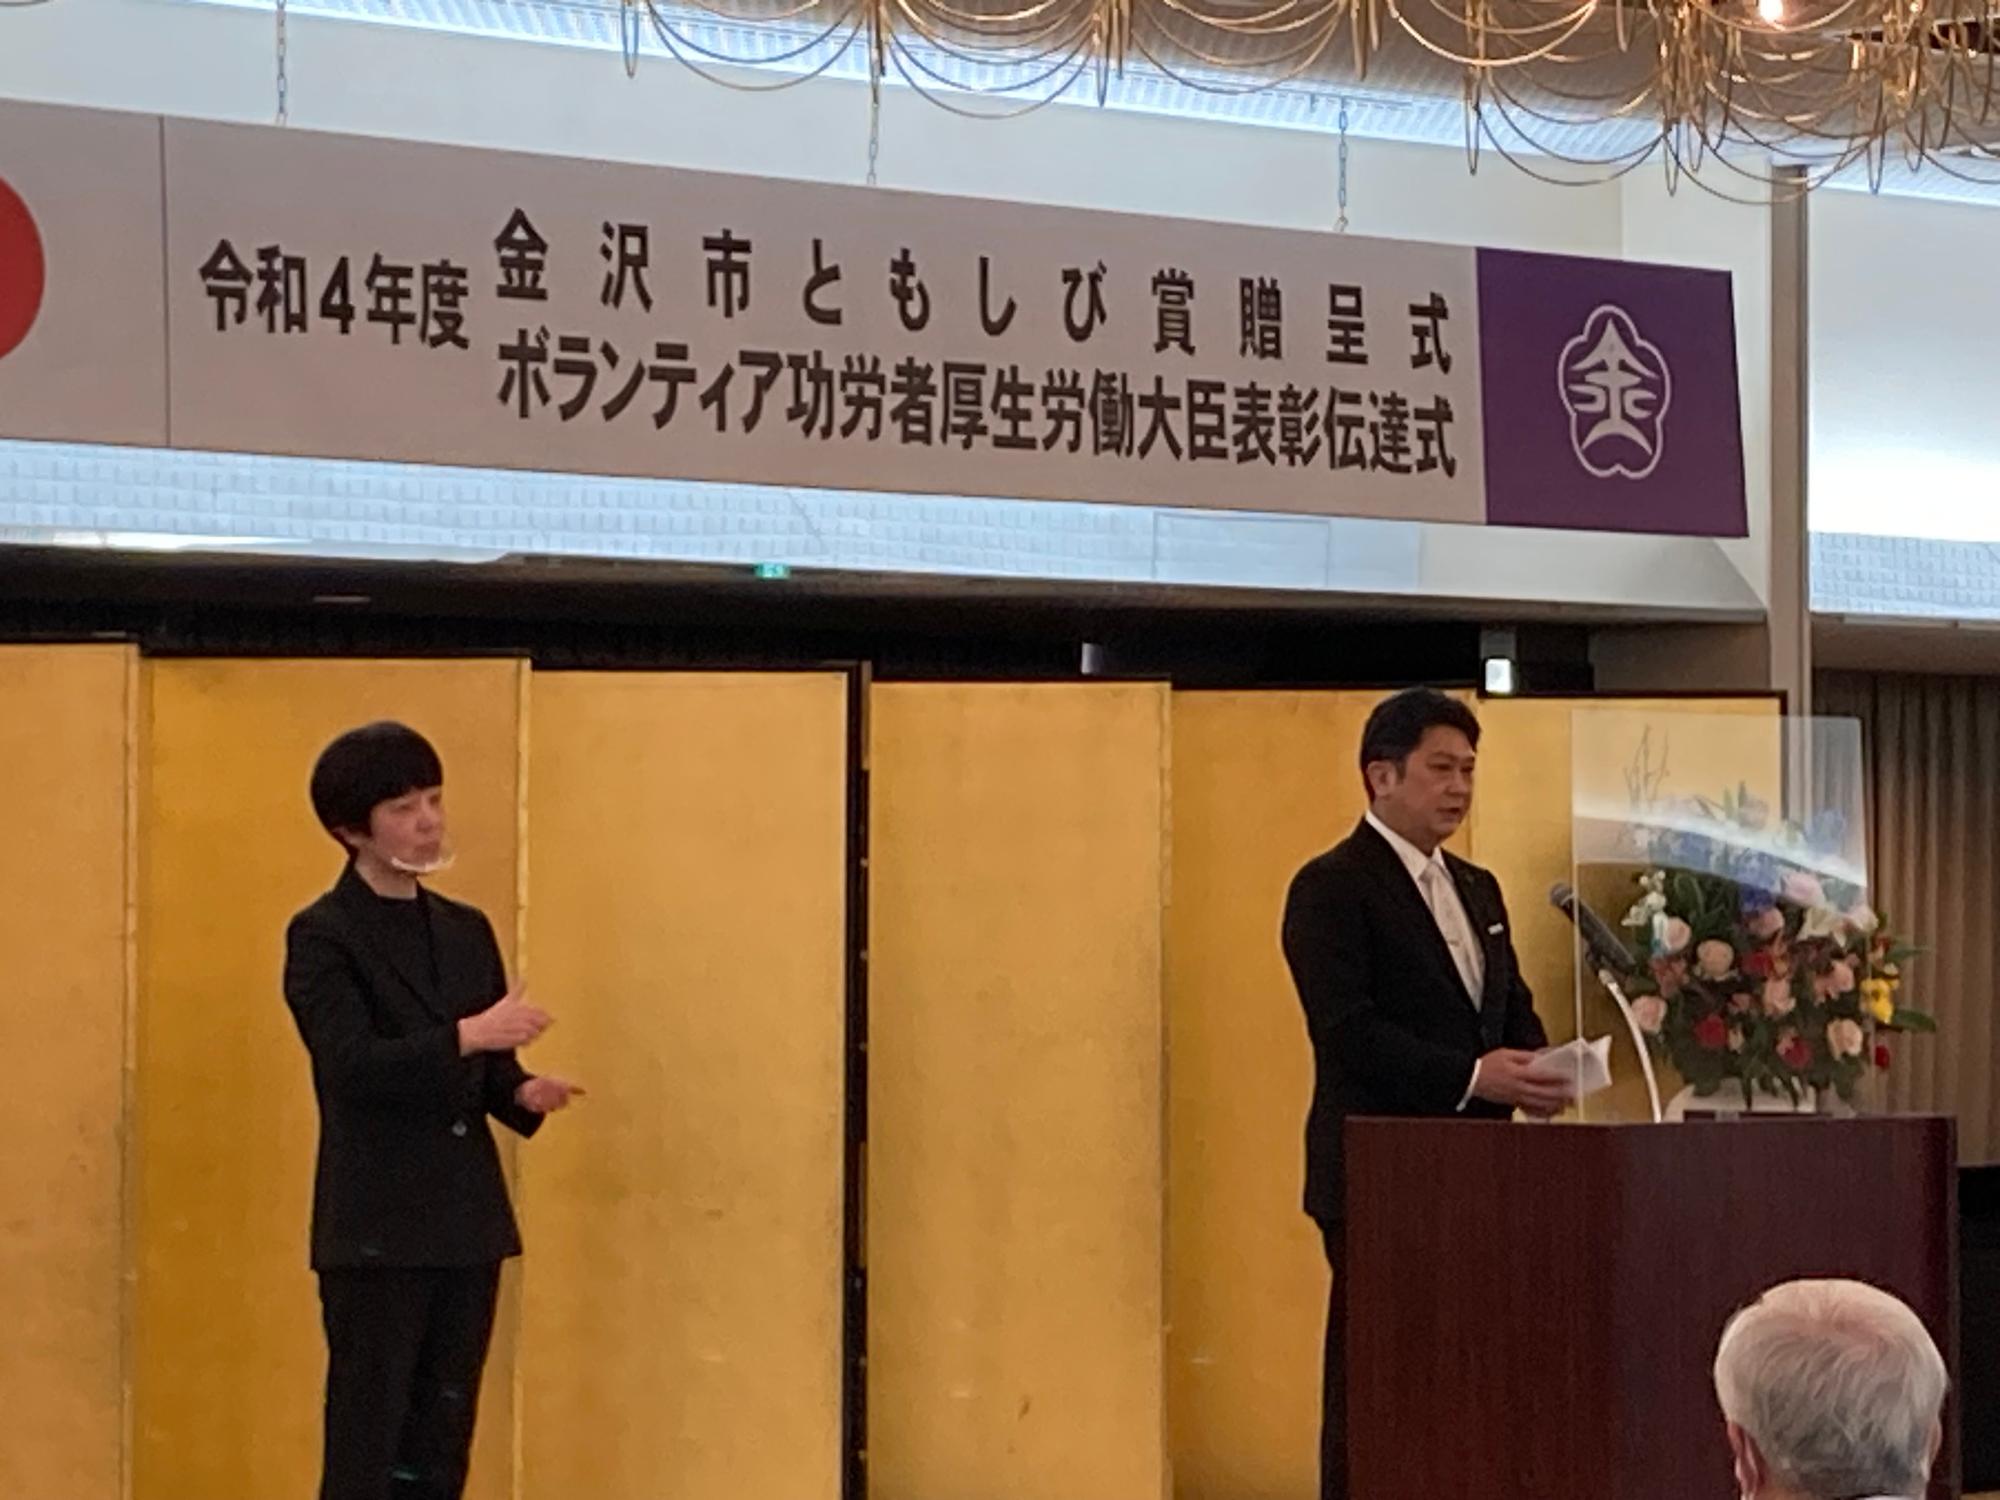 金沢市ともしび賞贈呈式・ボランティア功労者厚生労働大臣表彰伝達式の様子